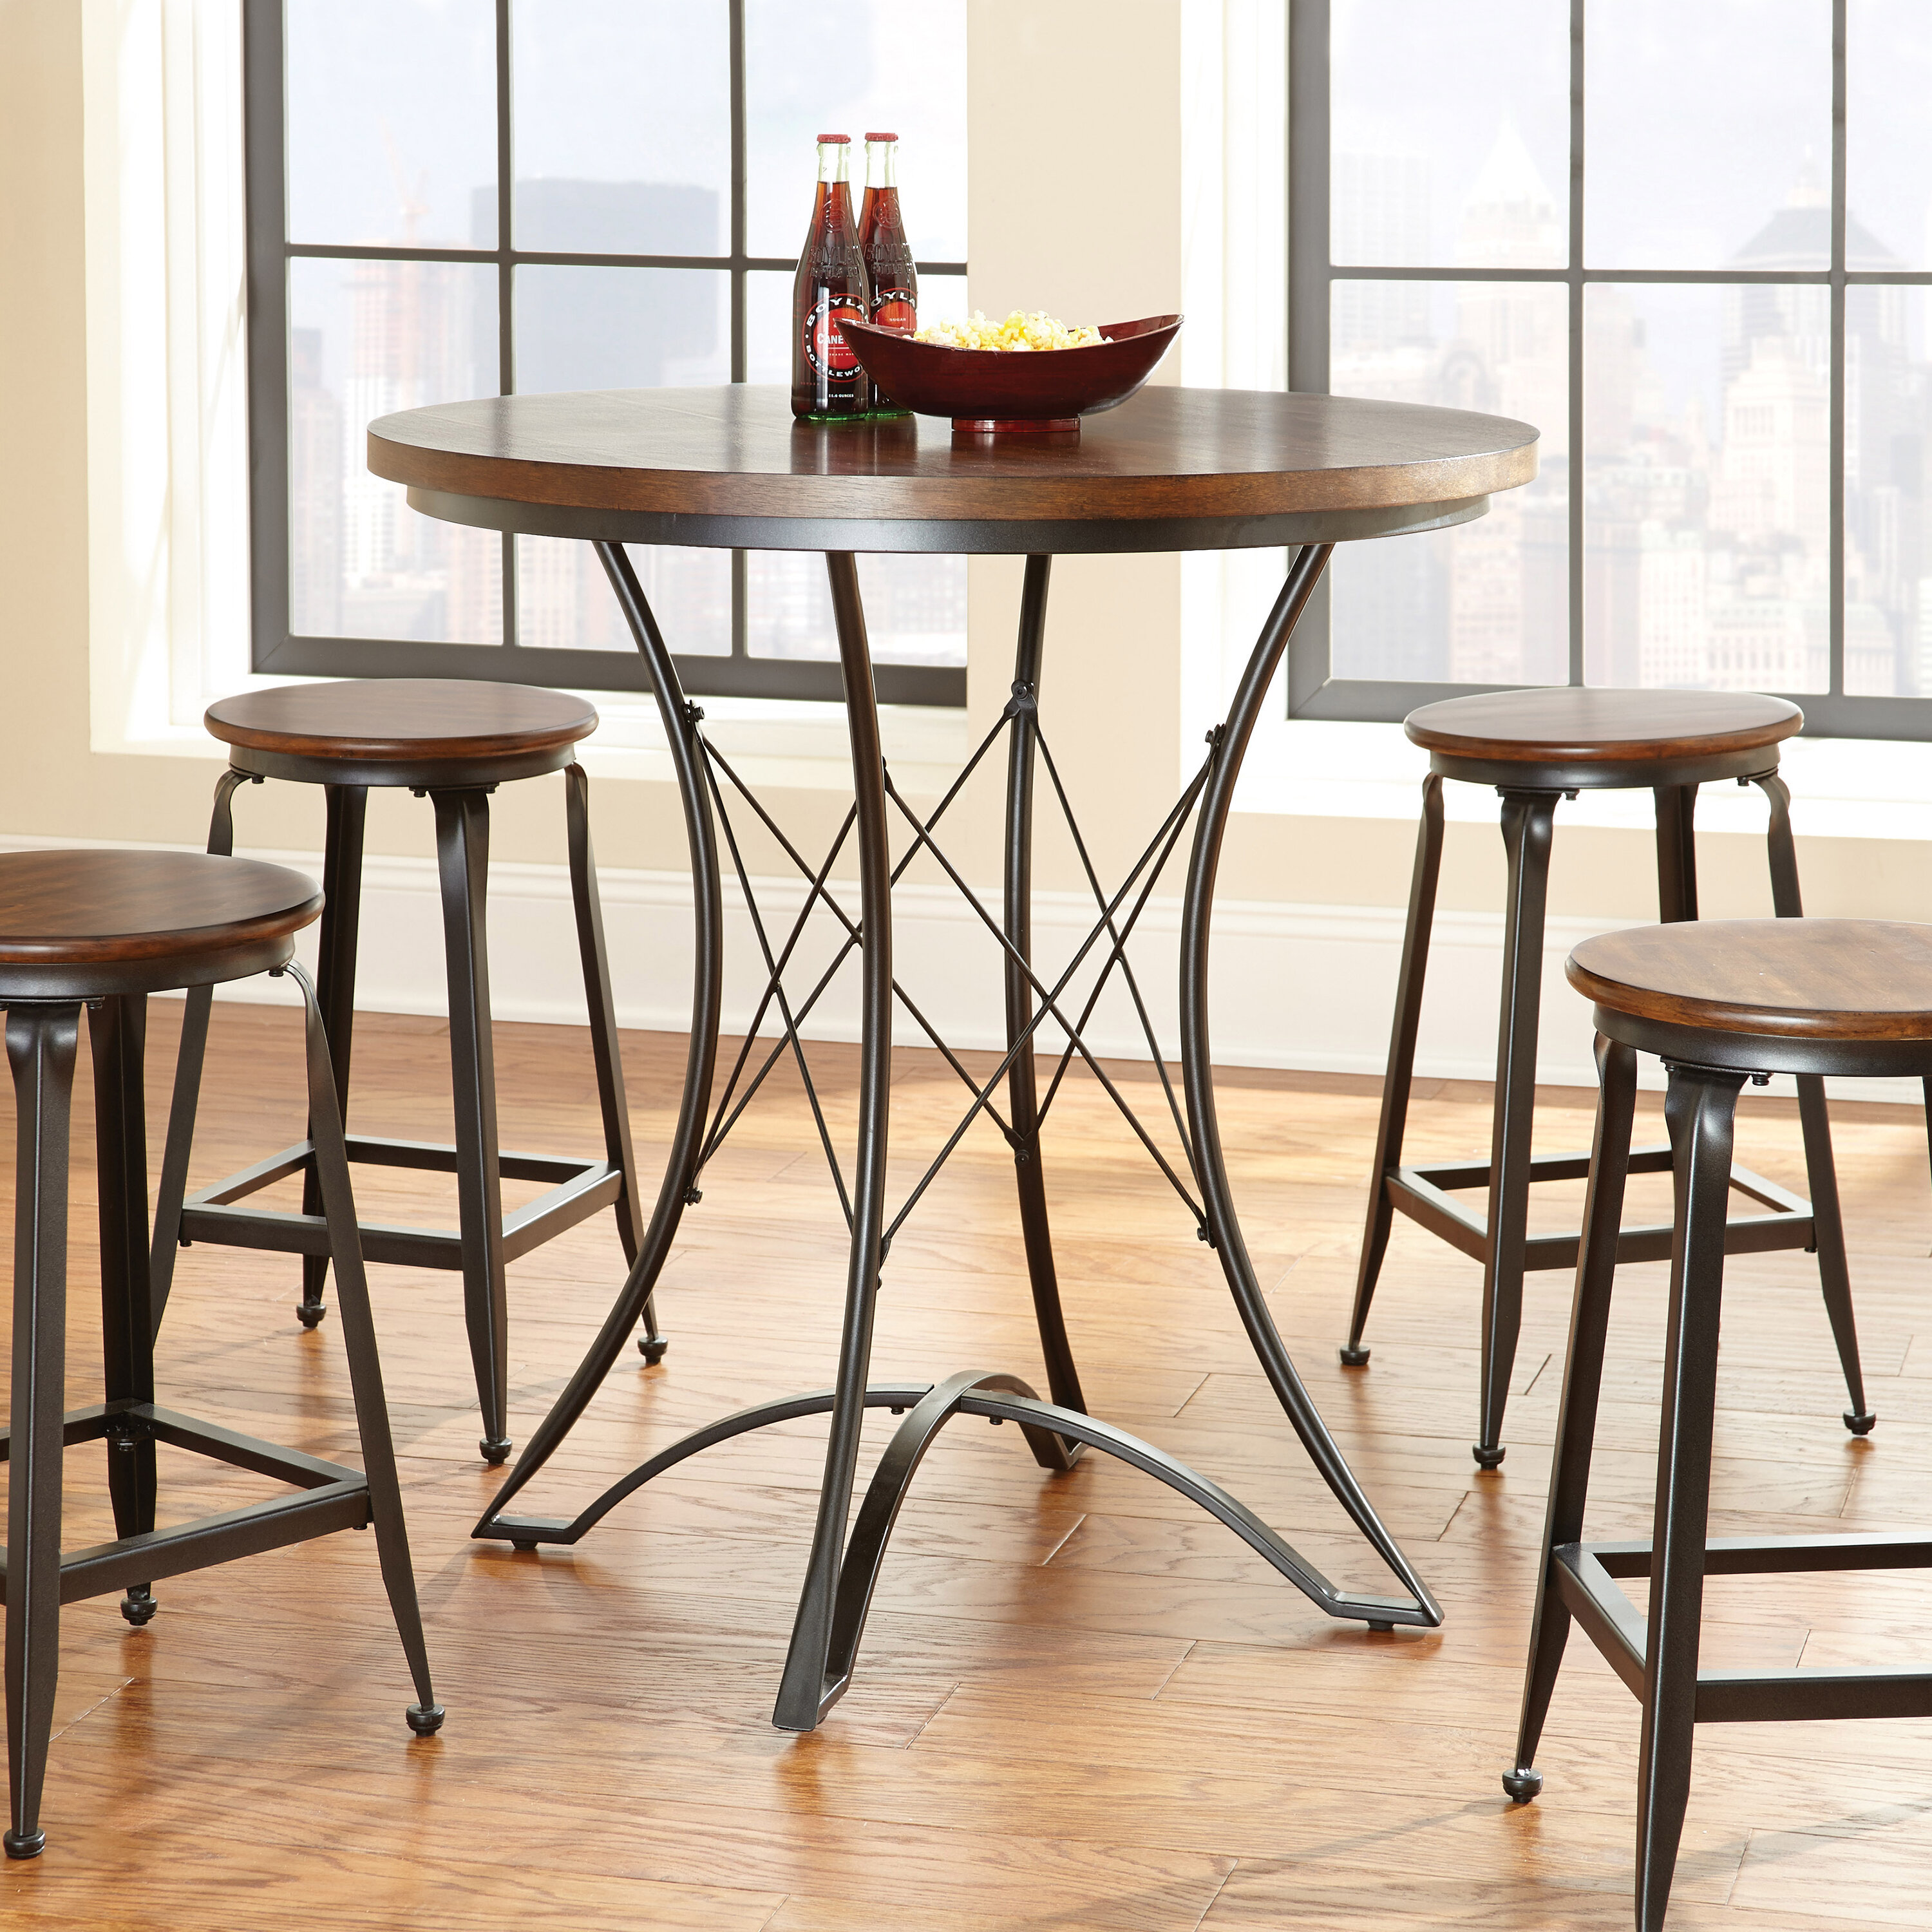 Железный кухонный стол. Железный стол для кухни. Железные стулья для кухни. Железный круглый стол на кухню. Круглые кухонные столы и стулья.